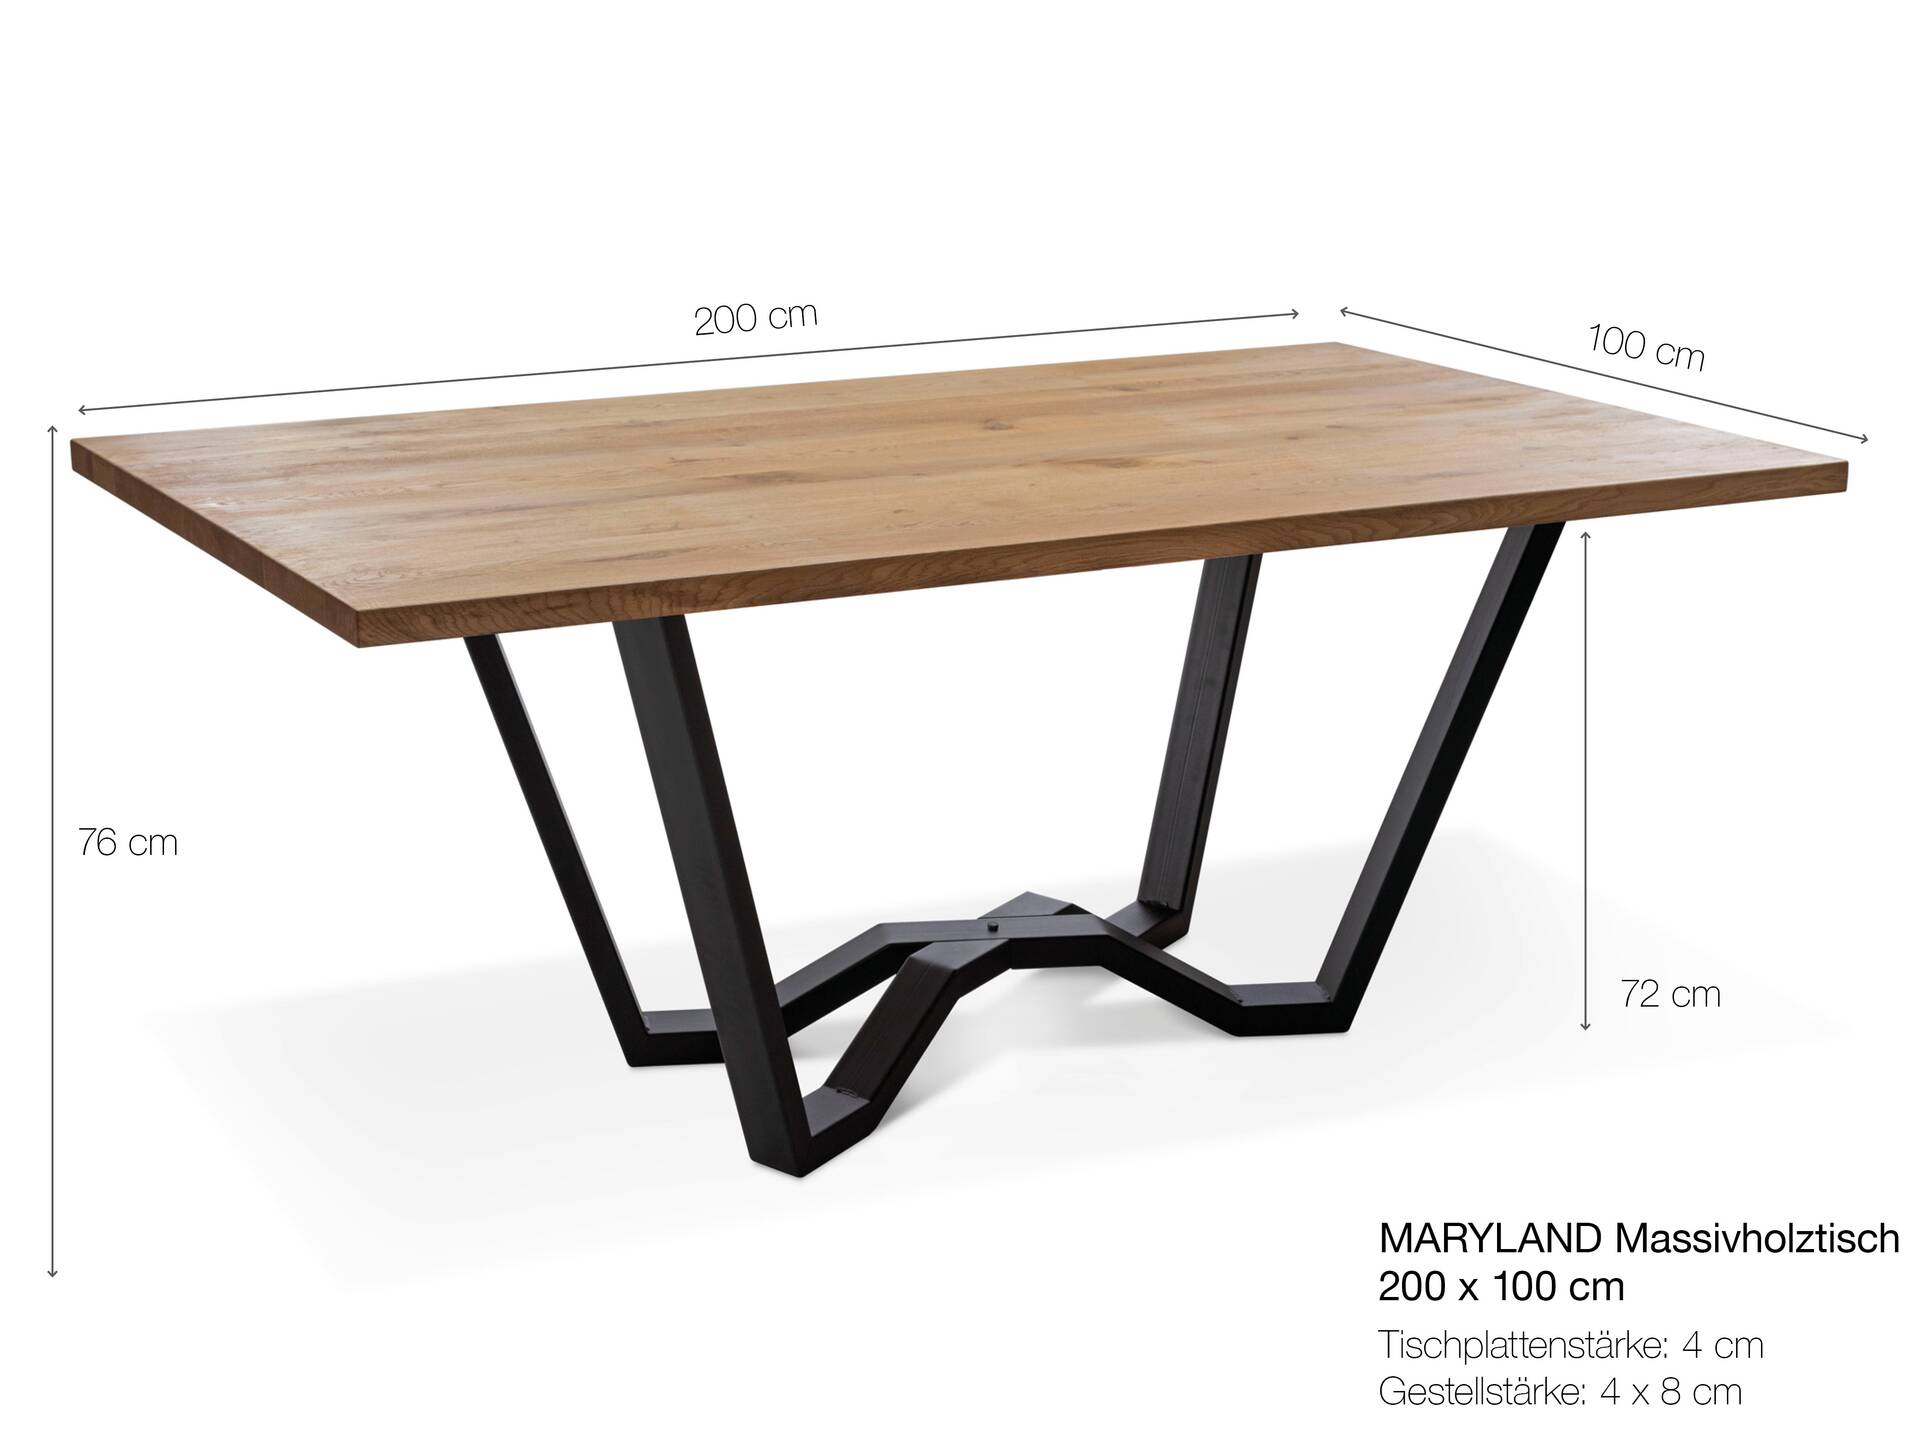 MARYLAND II Massivholztisch mit Baumkante, Material Eiche/Metallgestell SPINNE 200 x 100 cm